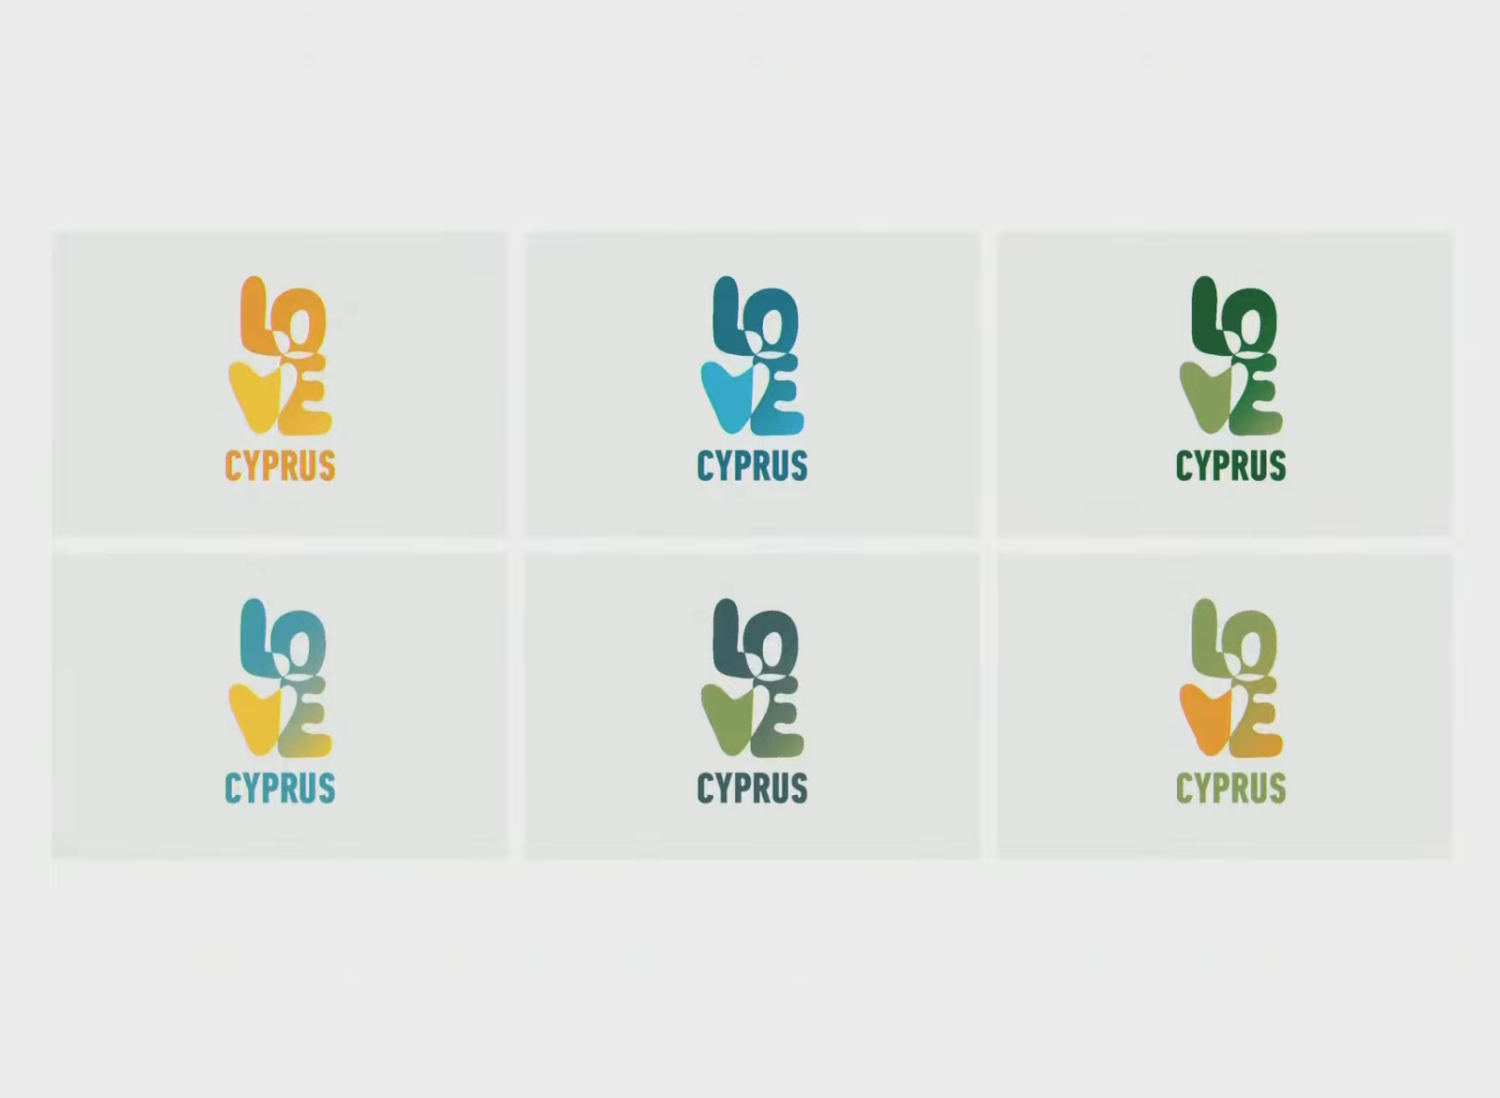 Cyprus Tourism Branding – Logo Versions, Quelle: Ministerium für Tourismus Zypern